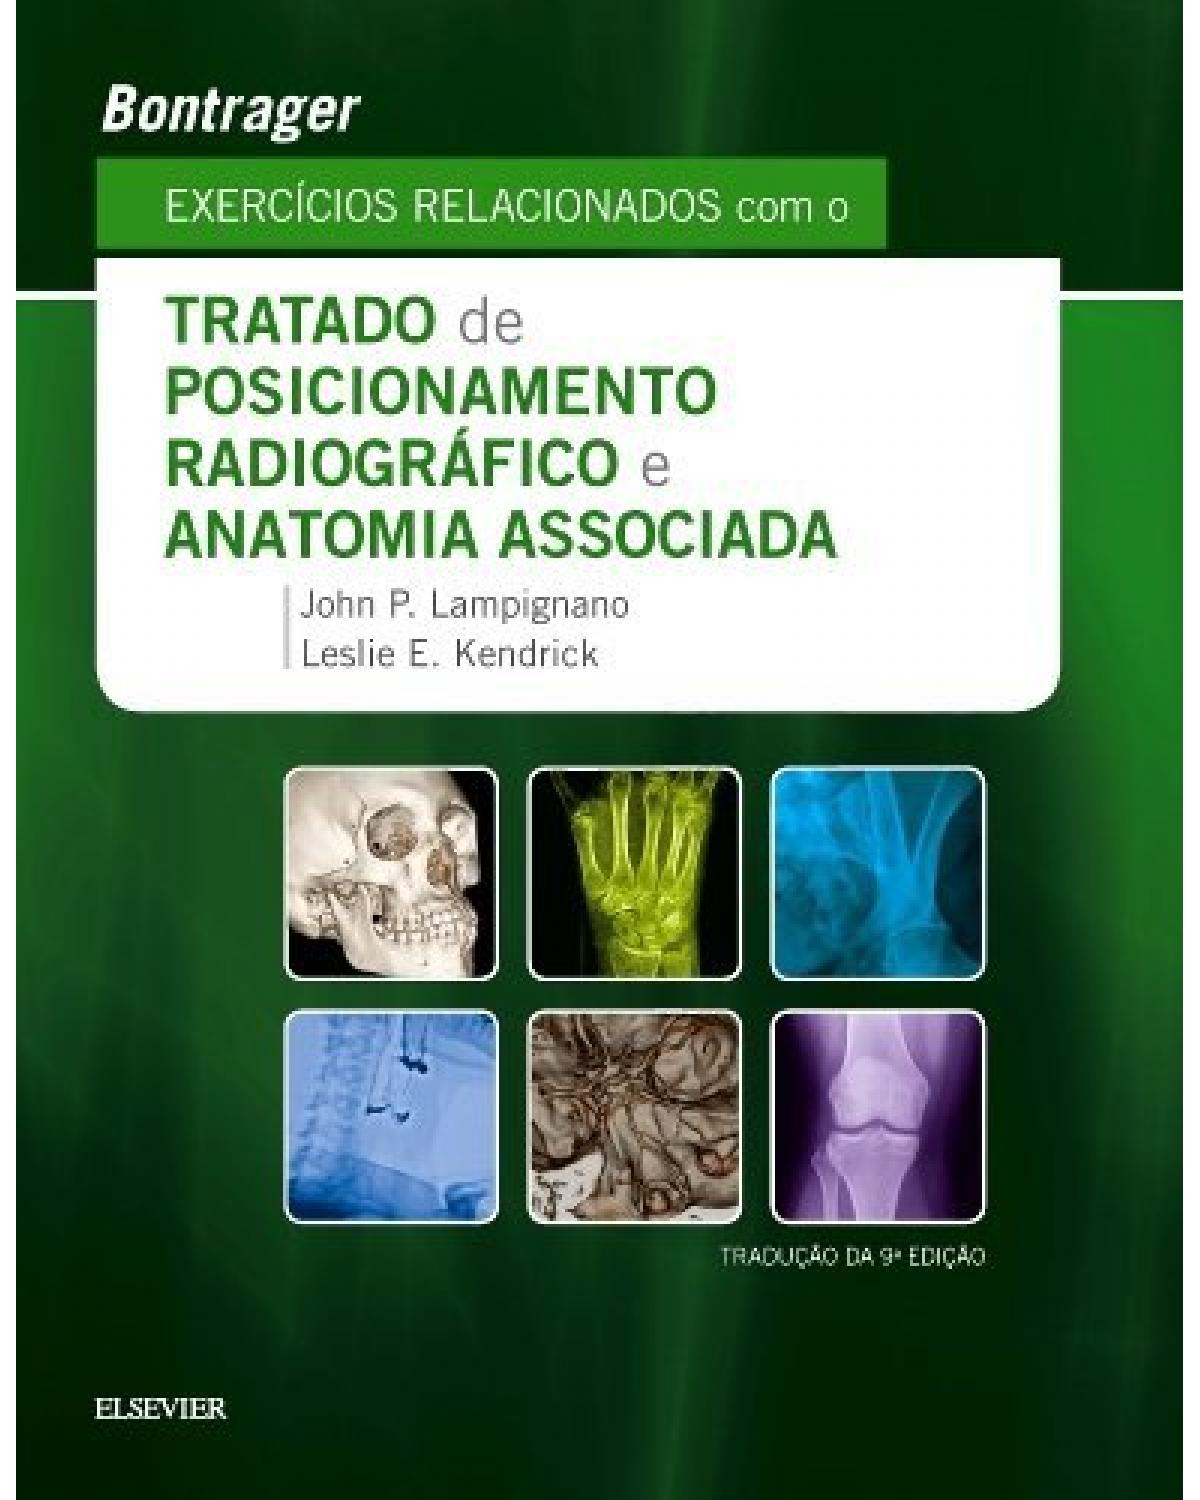 Bontrager - Exercícios relacionados com o tratado de posicionamento radiográfico e anatomia associada - 9ª Edição | 2018